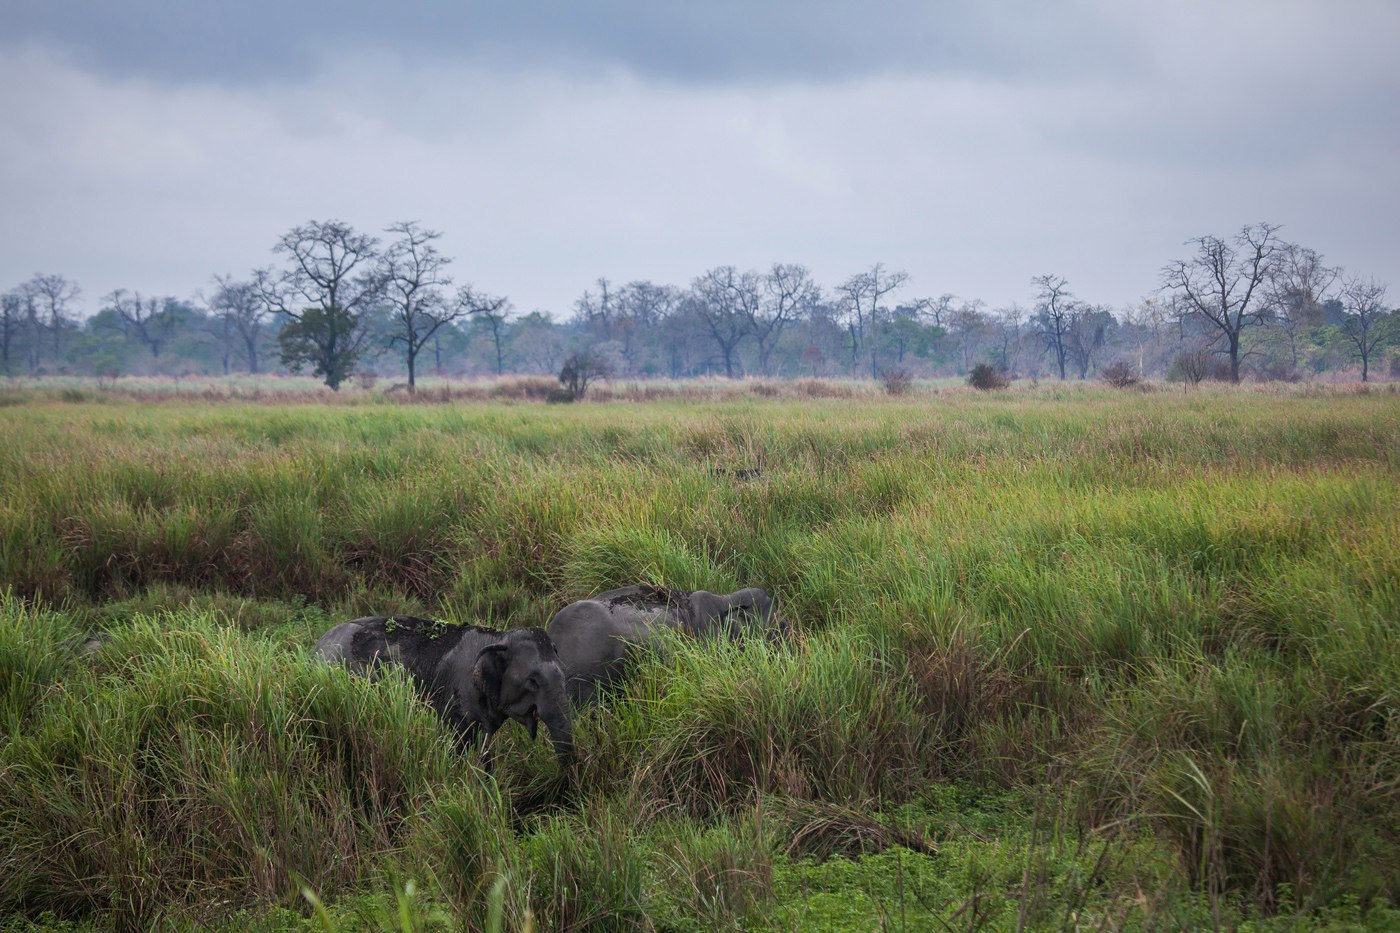 "Слоны прячутся в траве" Индия Казиранга национальный парк слоны животные путешествие